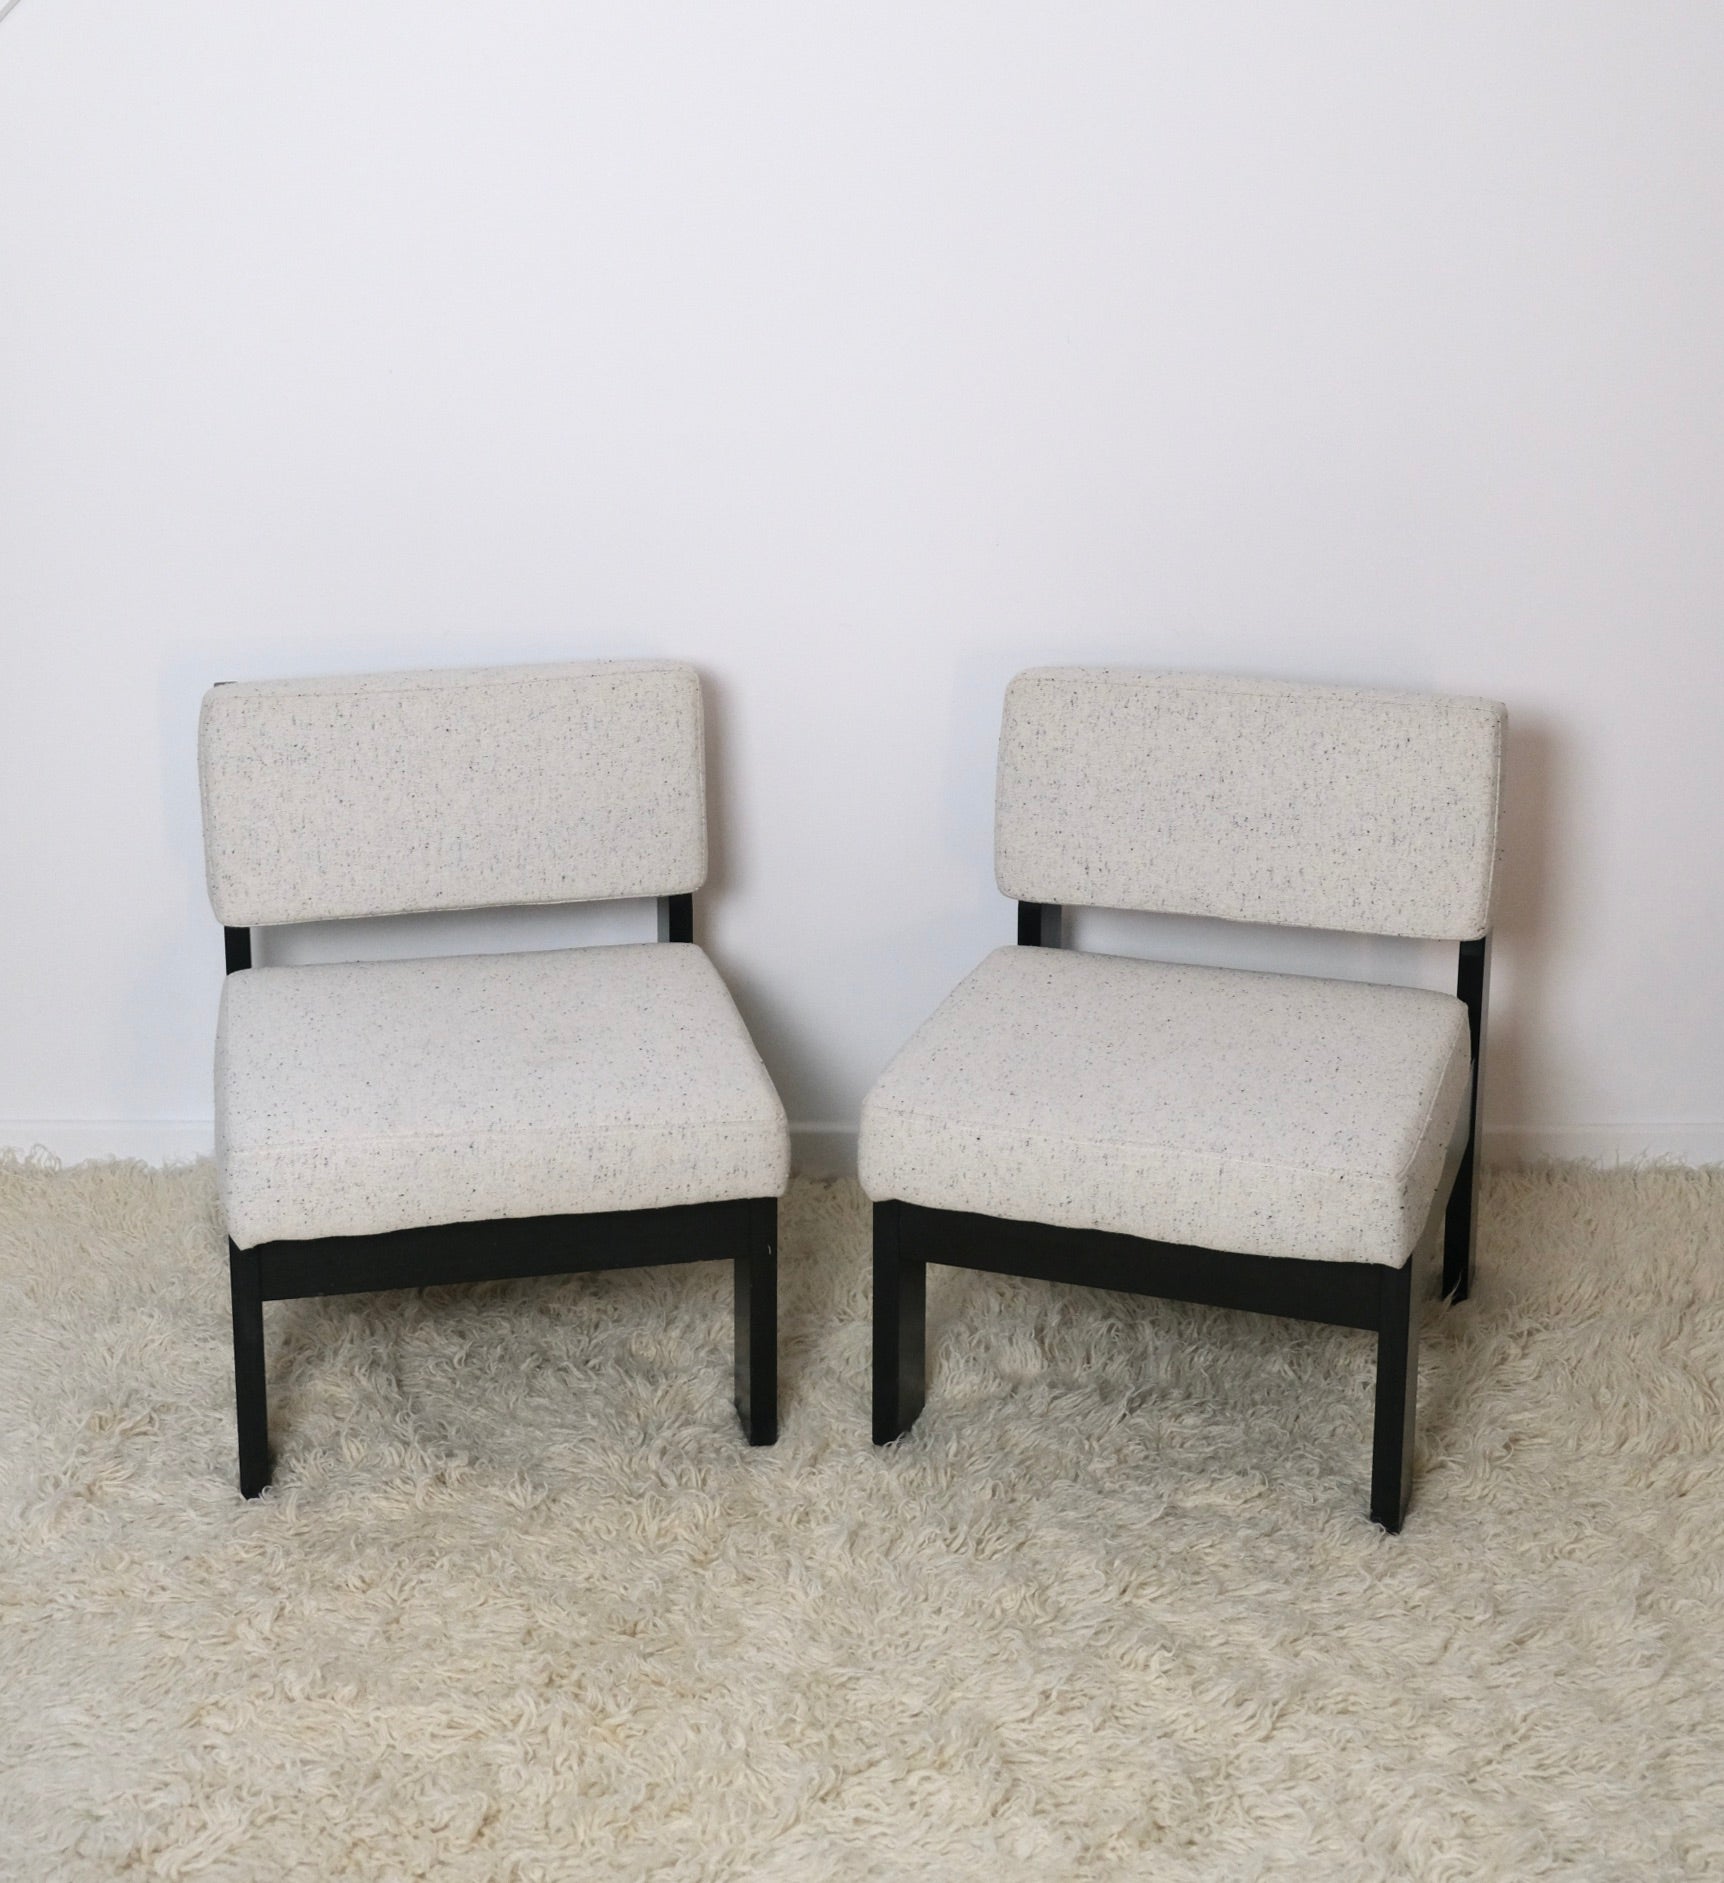 Paire de fauteuils en bois noir modernistes - Assises - La Nouvelle Galerie